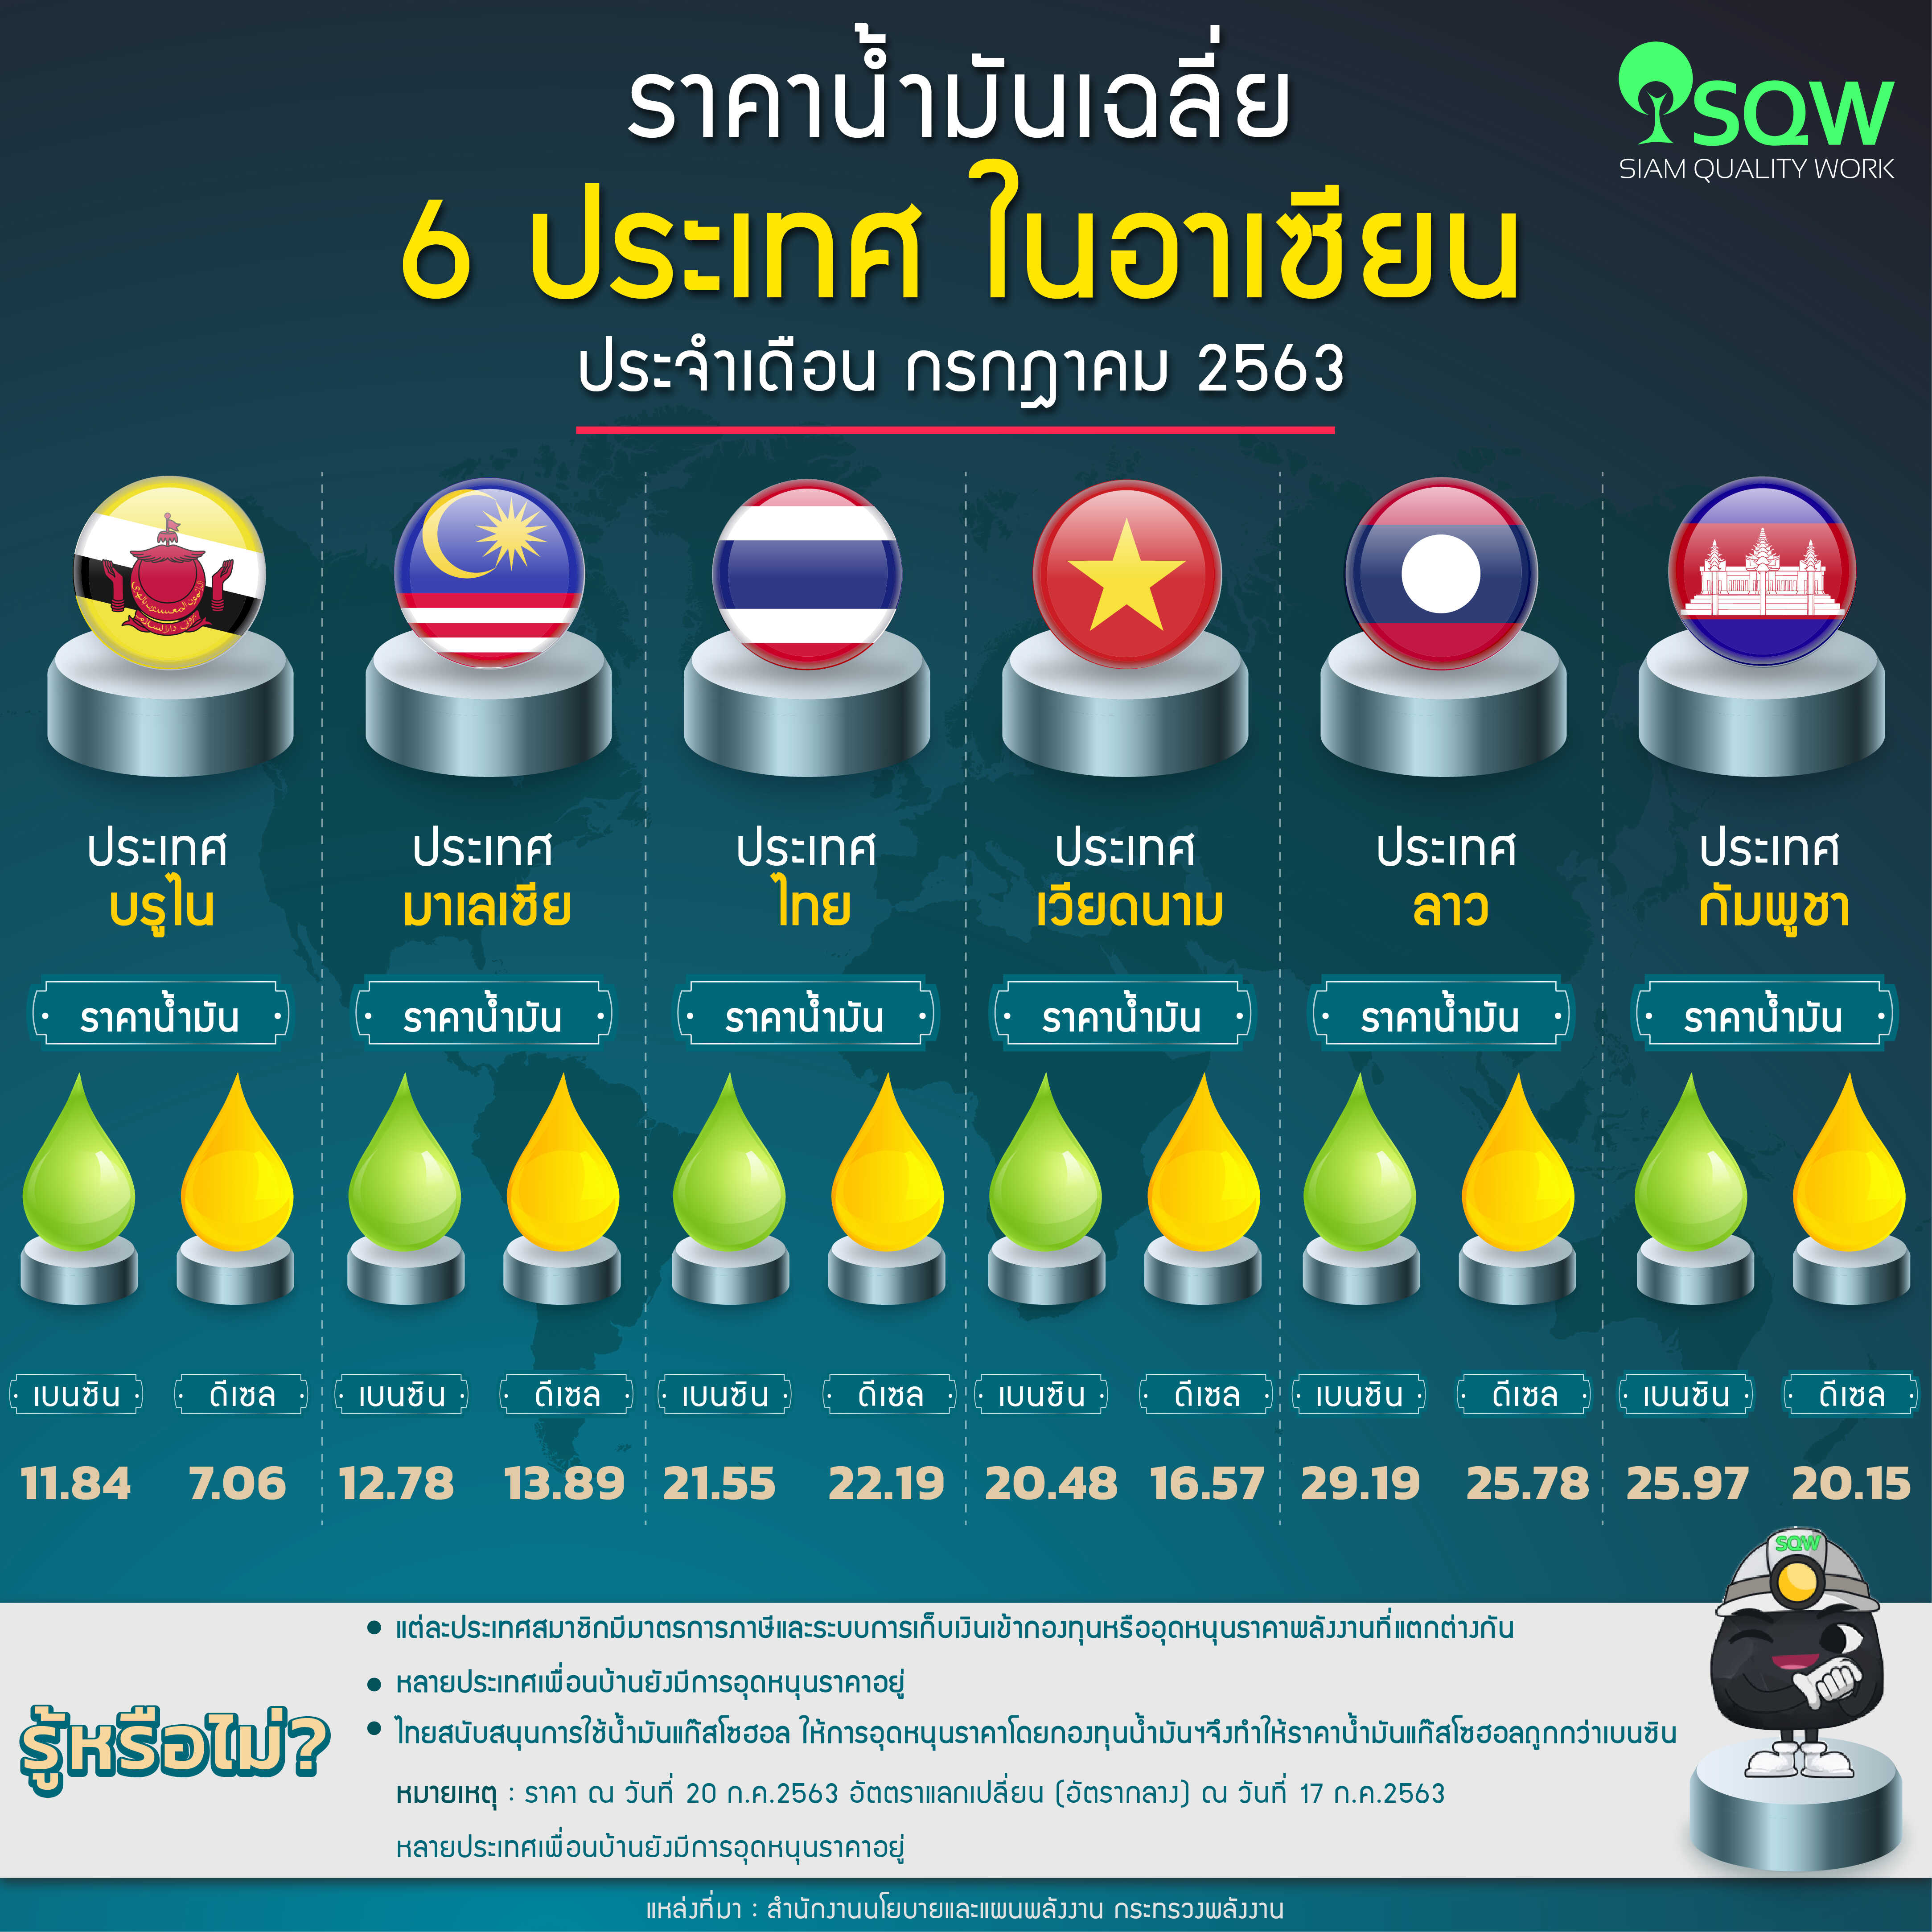 ราคาน้ำมันเฉลี่ยใน6 ประเทศในอาเซียน ประจำวันที่ 20 กรกฎาคม 2563